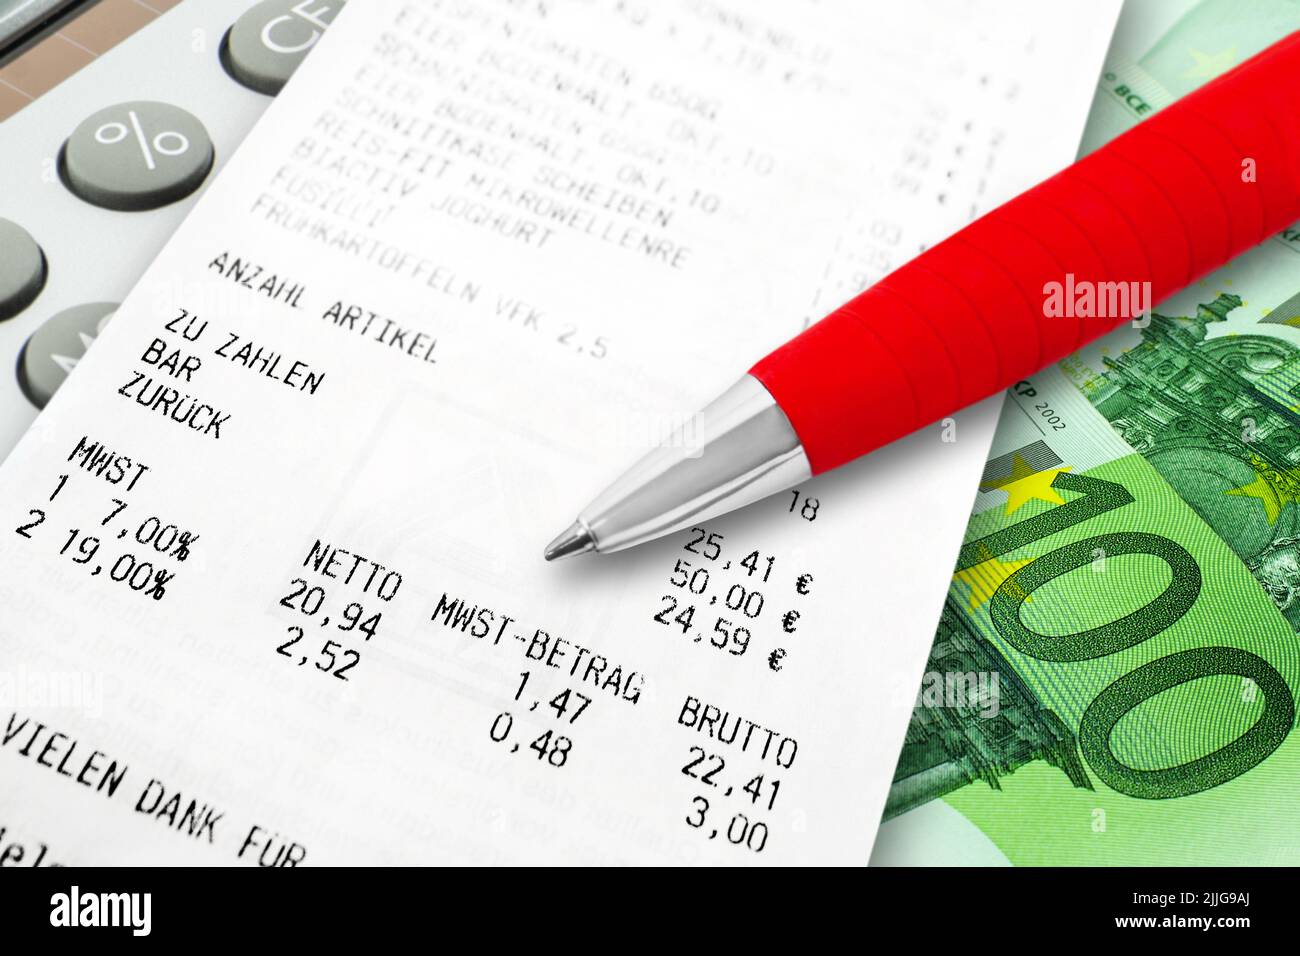 Einkauf Lebensmittel und Mehrwertssteuer mit Rechner, Euro Geldschein und Kugelschreiber Stockfoto